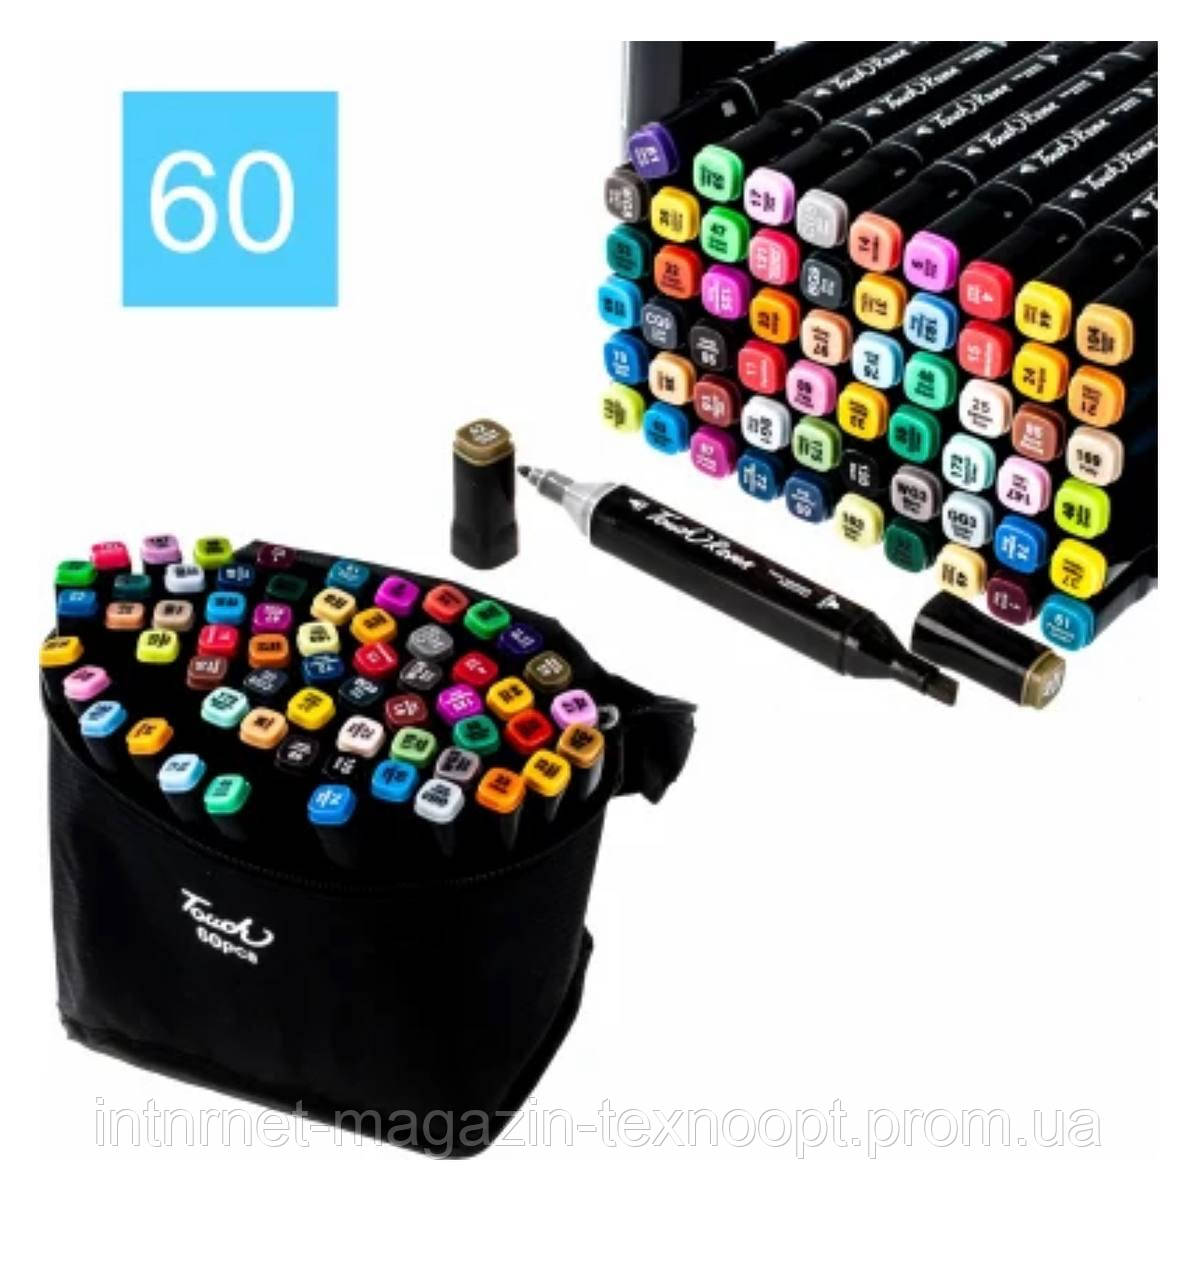 

Набор маркеров Touch для рисования и скетчинга на спиртовой основе 60, Разные цвета